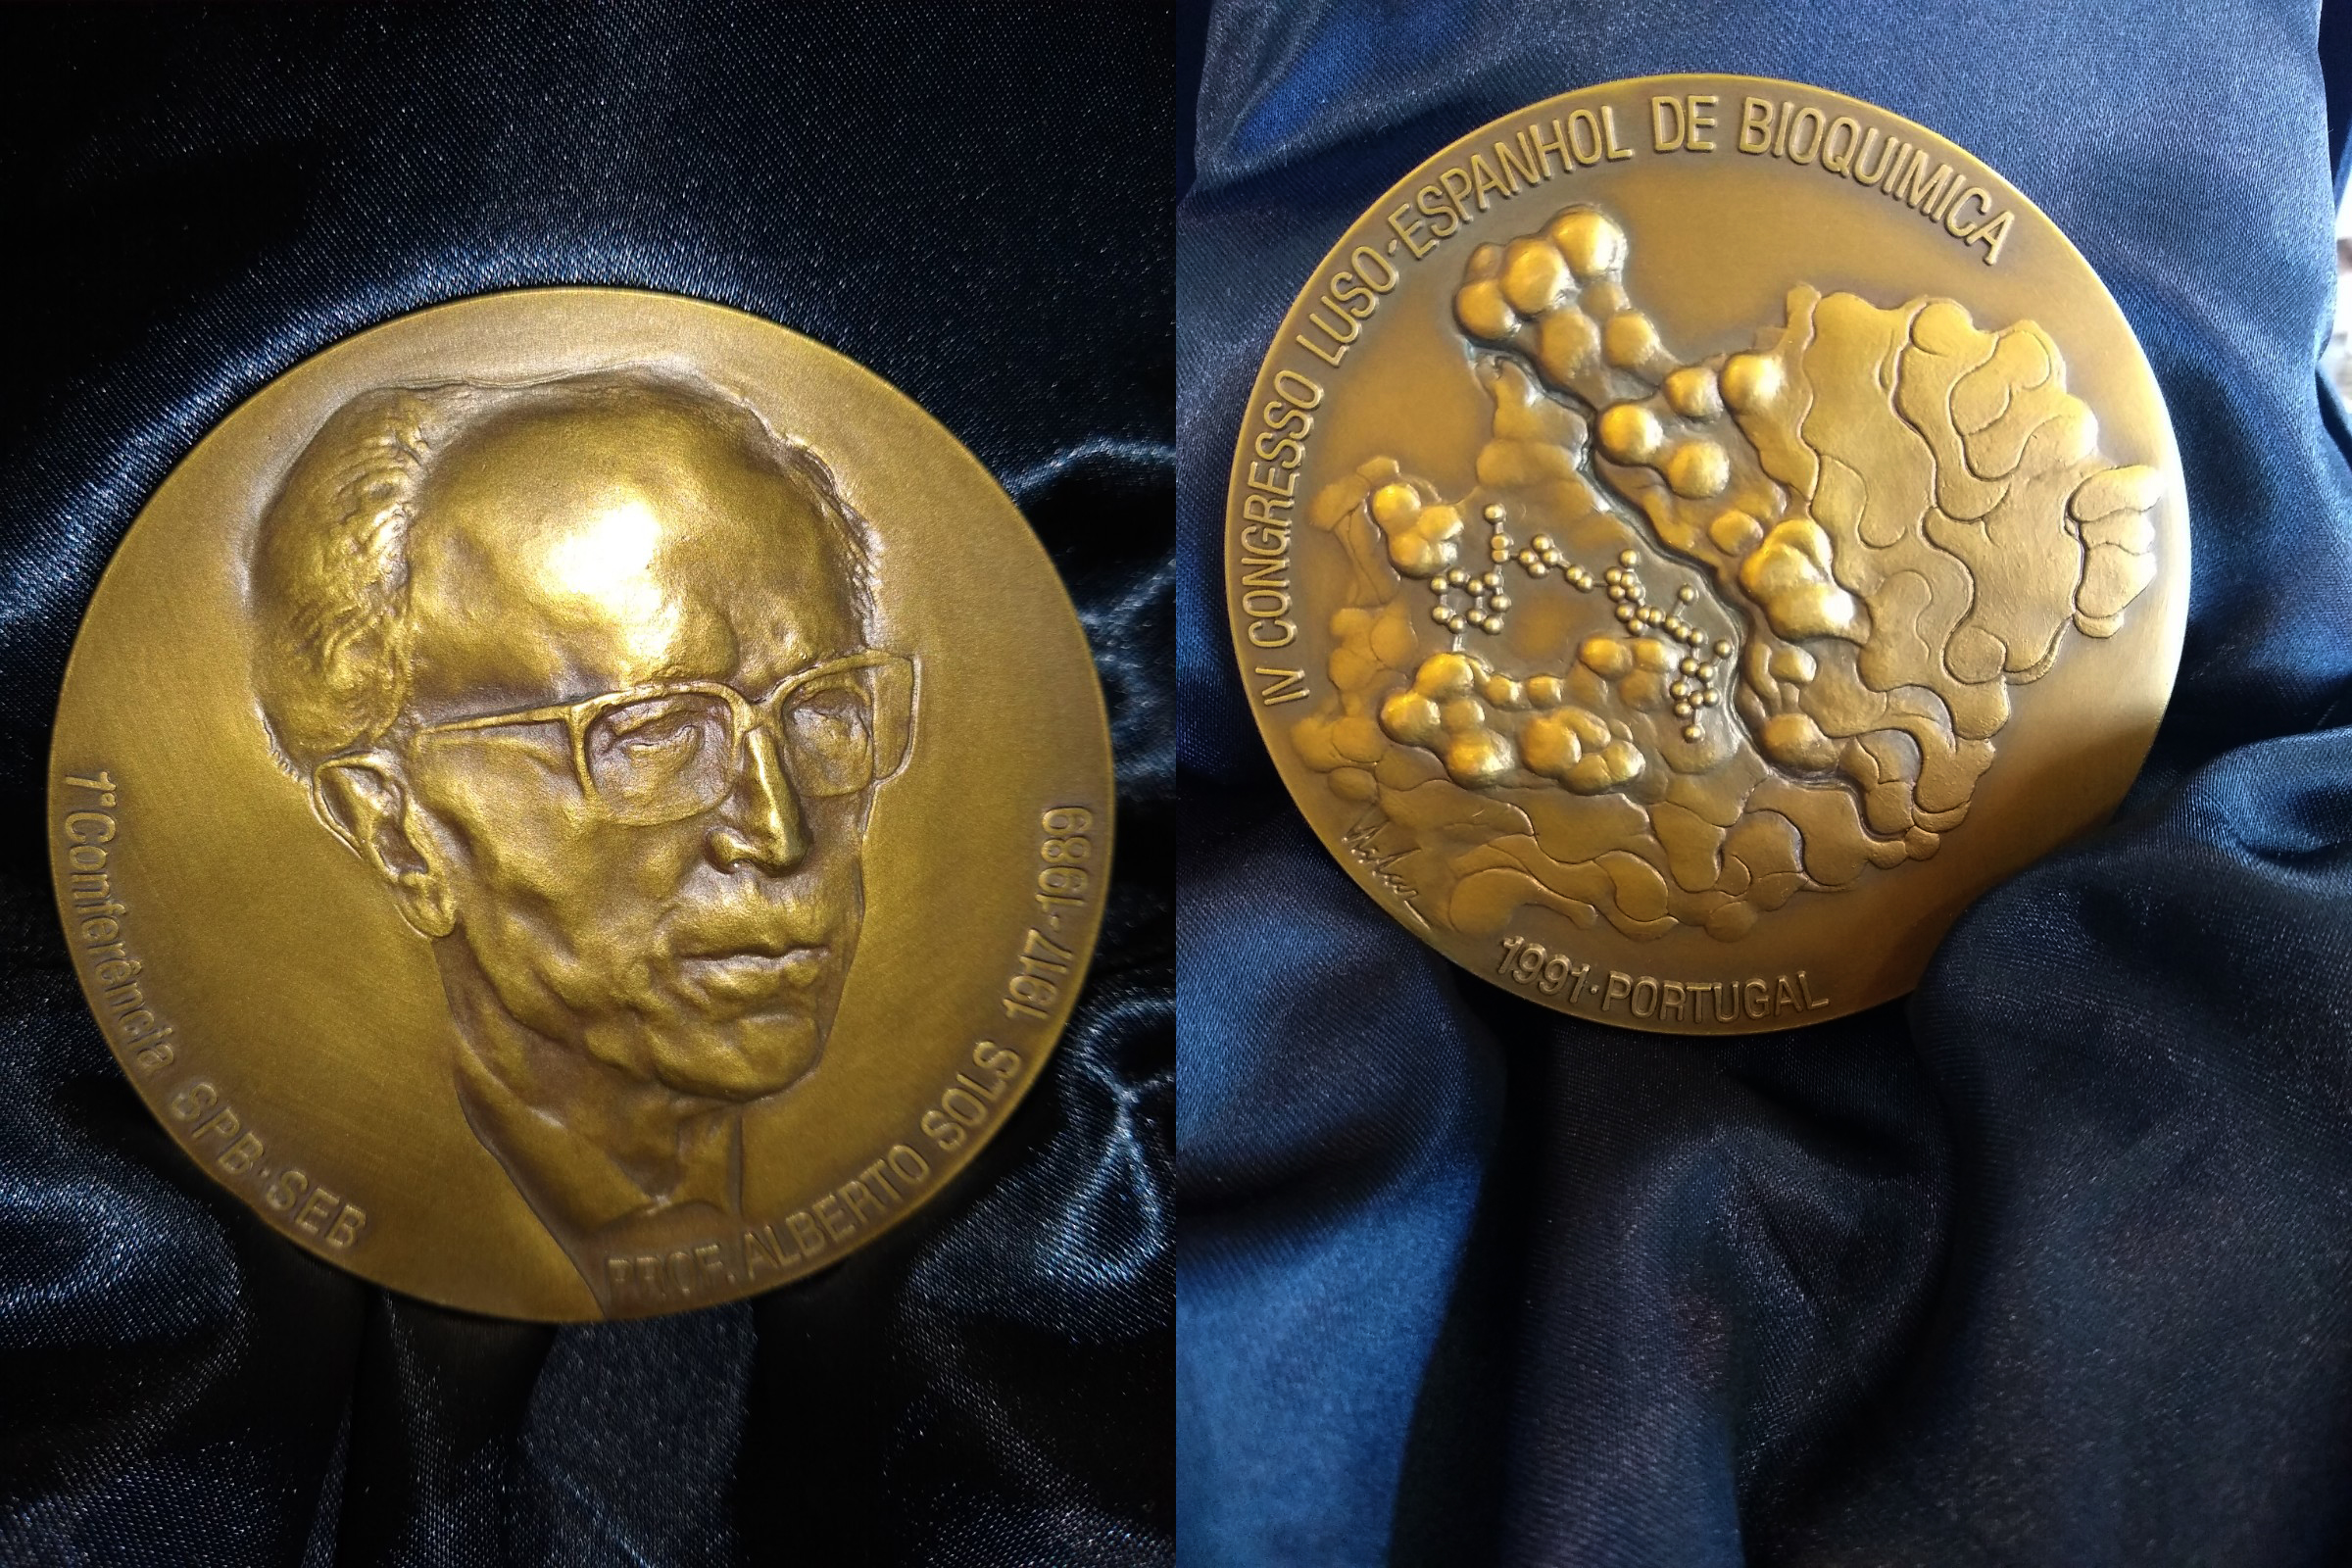 Medalla del IV Congreso Luso-Español de Bioquímica